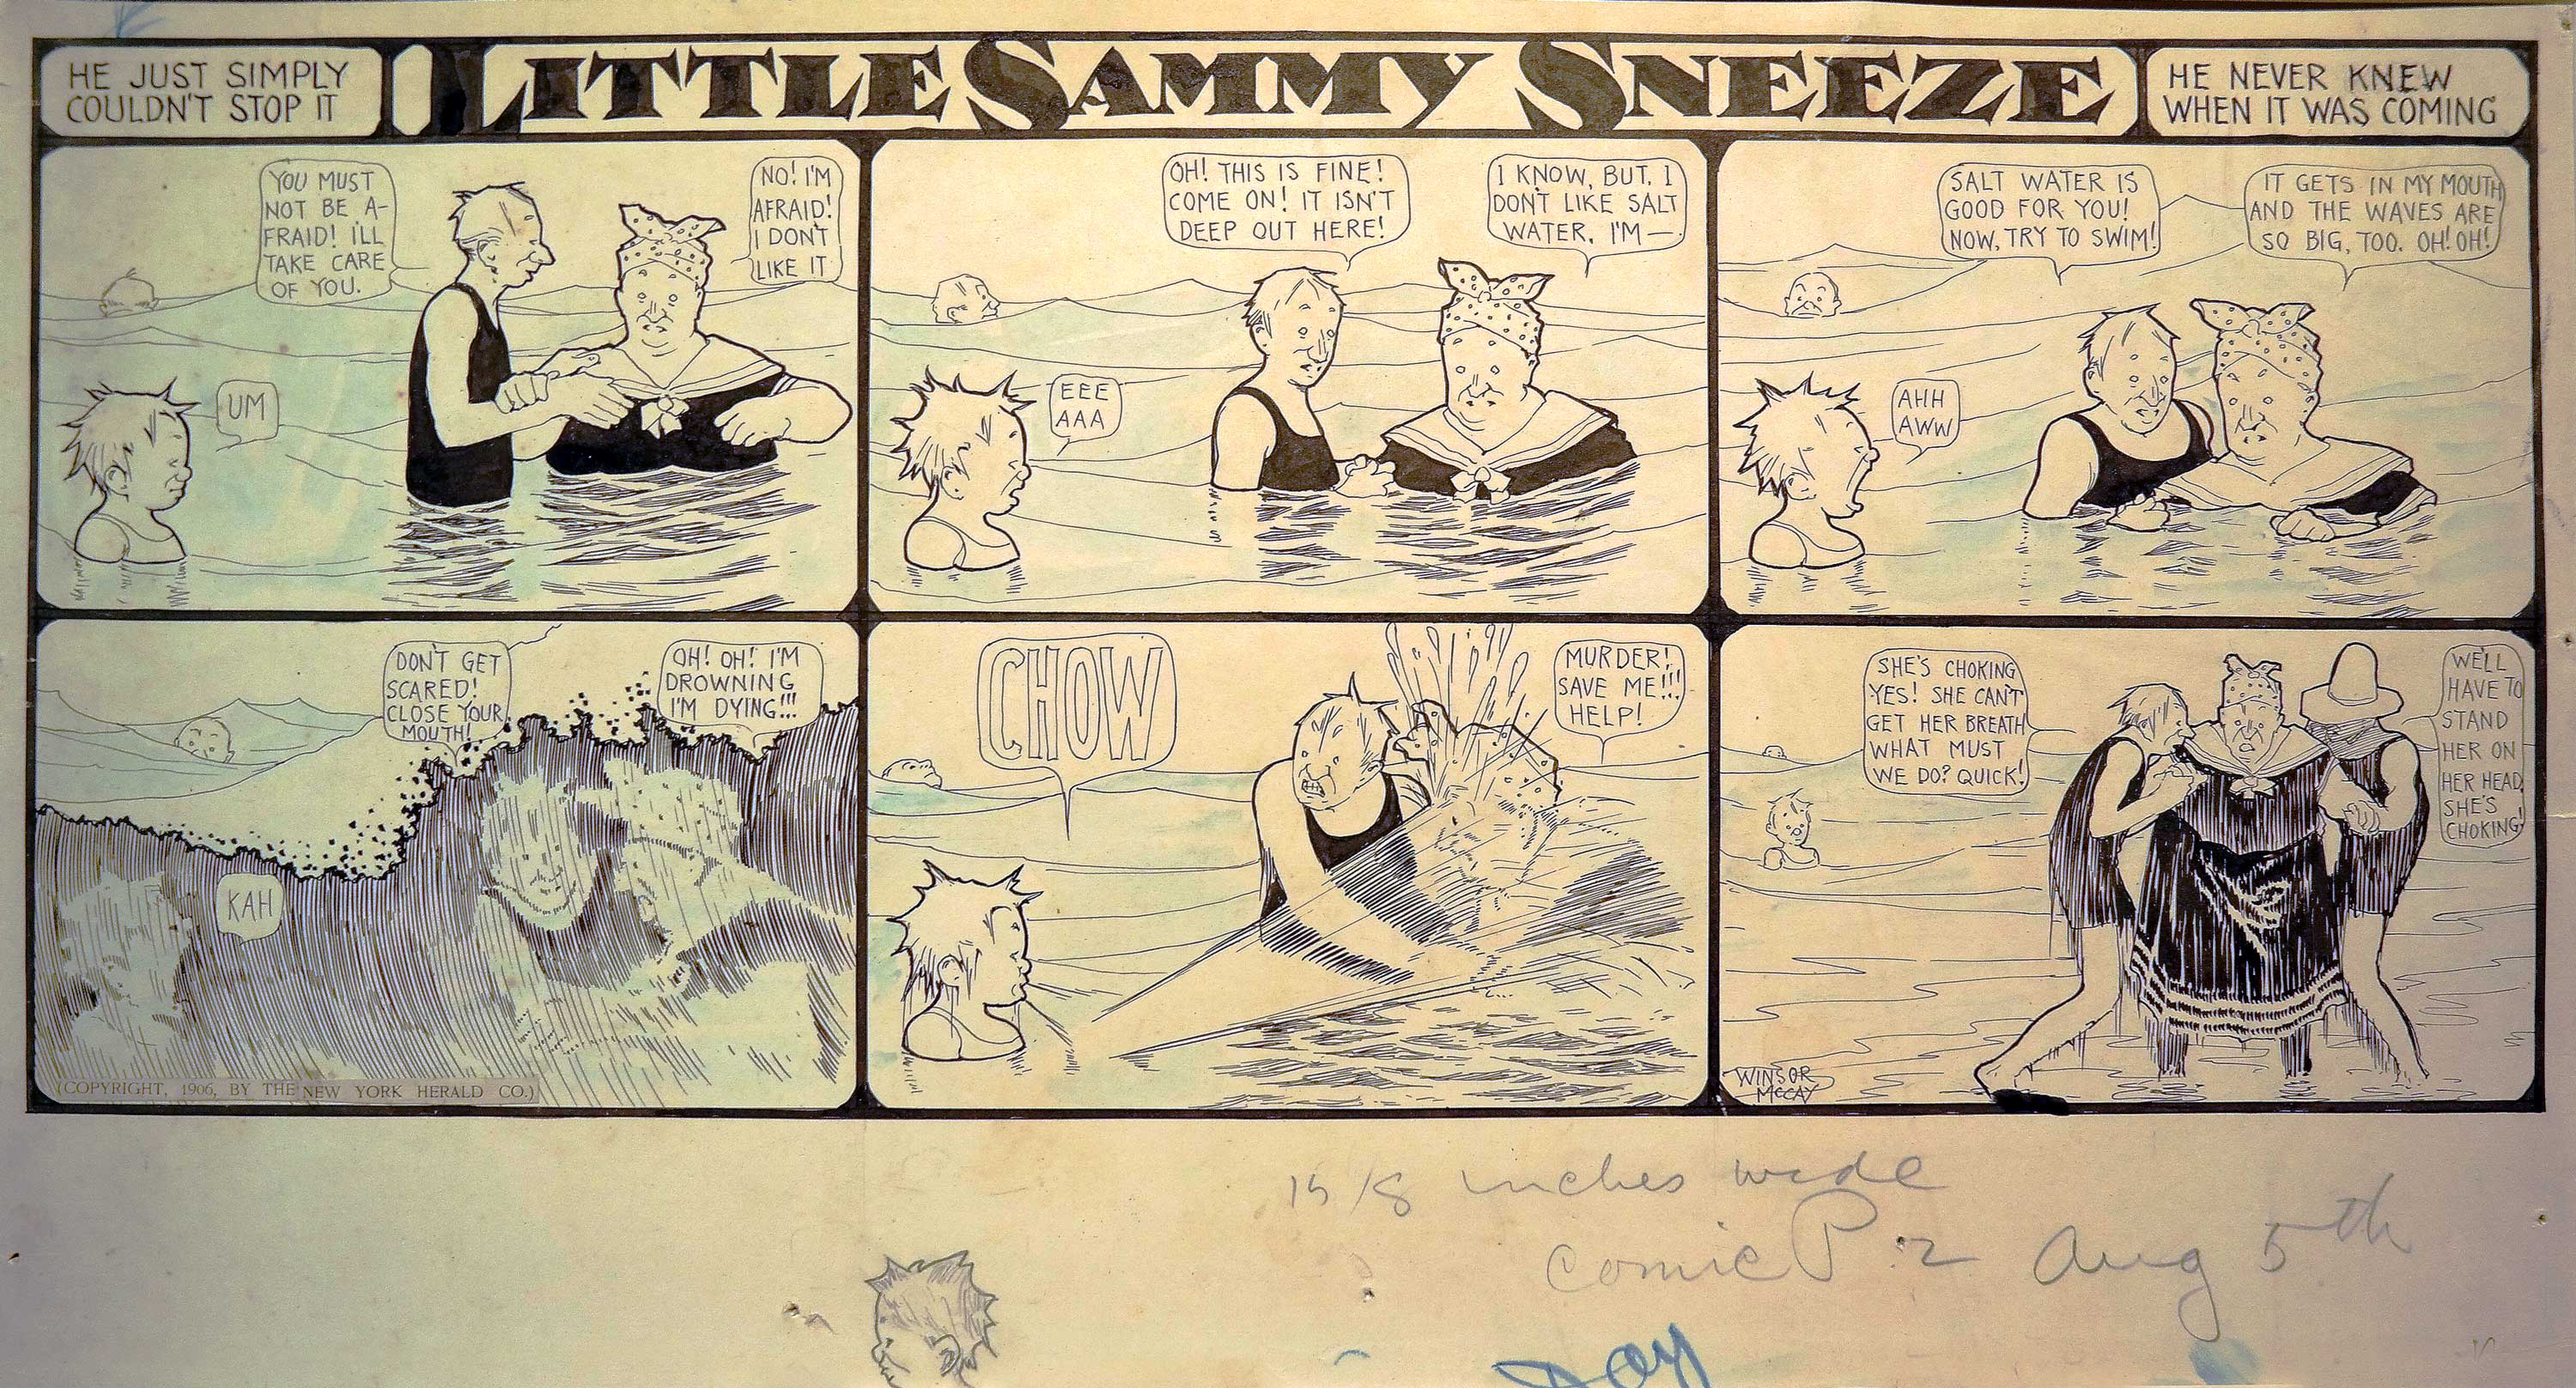 Si Lettle Nemo reste le personnage le plus connu de McCay, d’autres sont également bien représentés dans cette exposition.